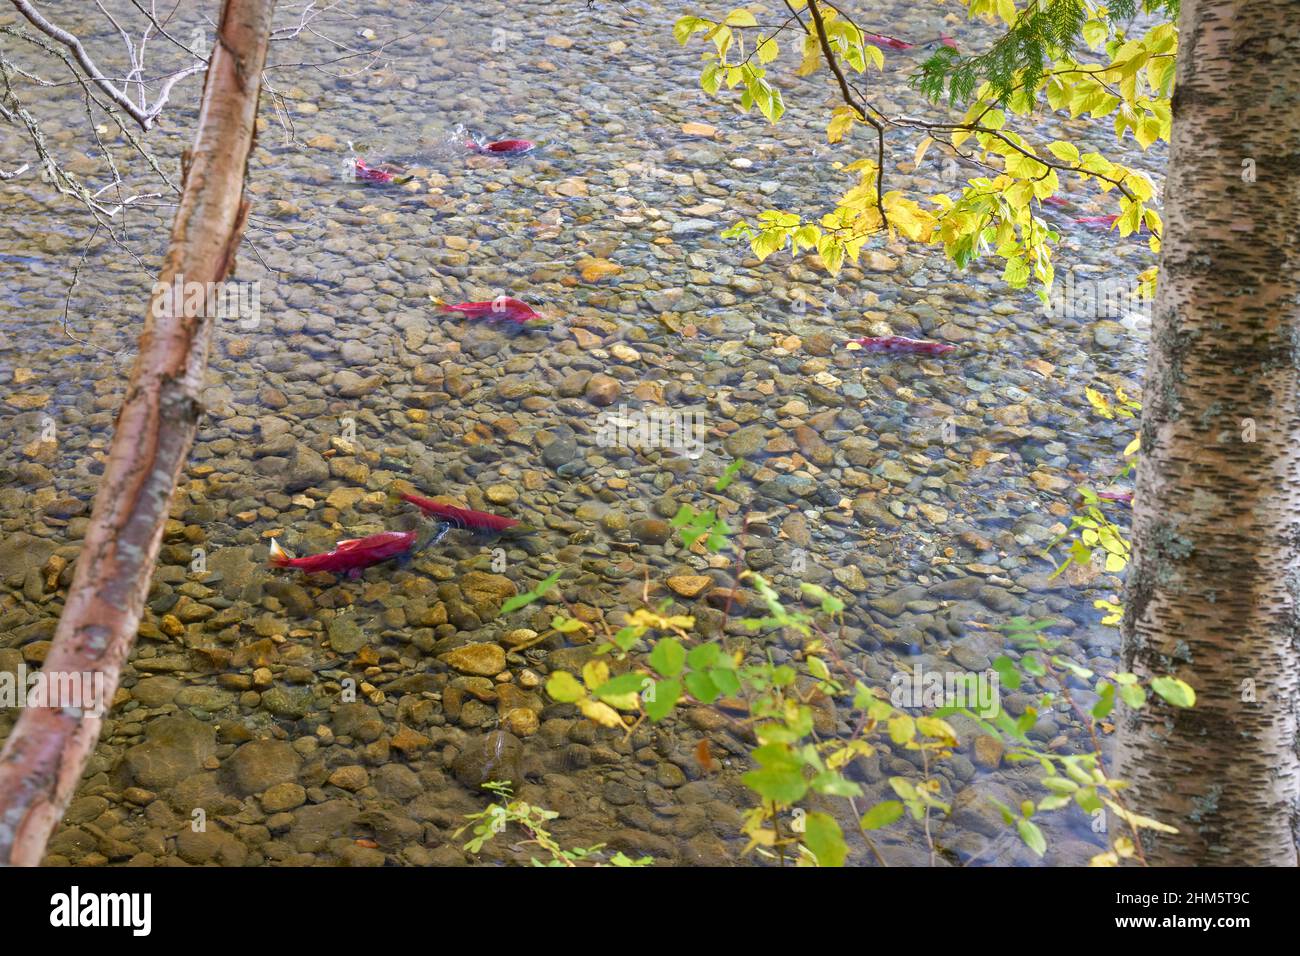 Saumon sous les arbres de la rivière Adams. Saumon rouge nageant sous les arbres le long de la rive de la rivière Adams, Colombie-Britannique, Canada. Banque D'Images